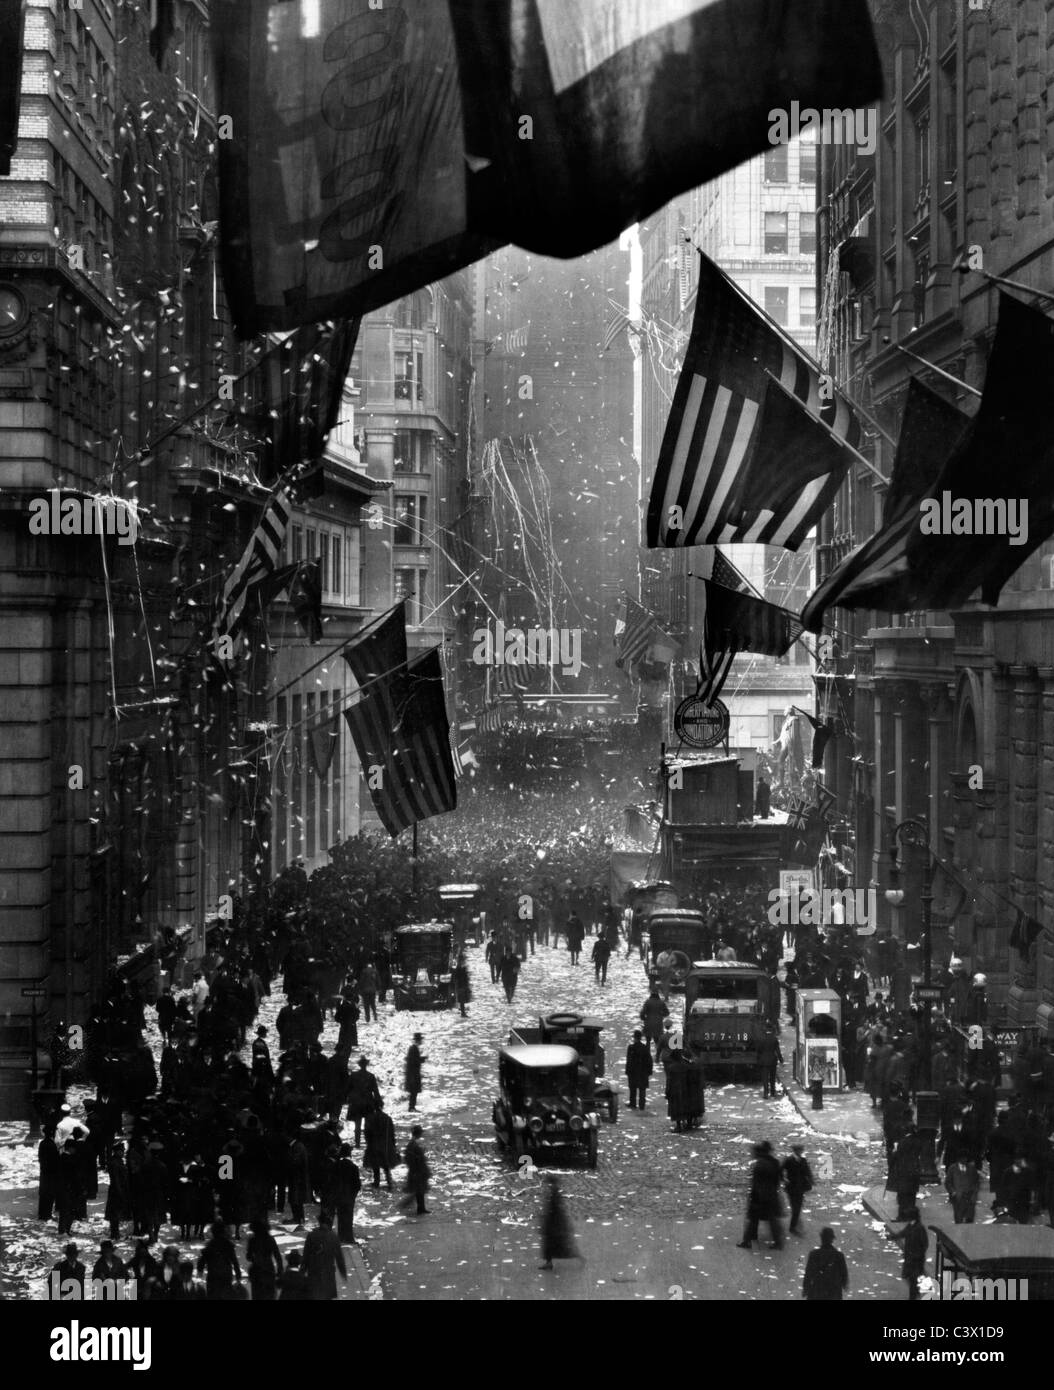 La Germania si arrende - Fotografia mostra le celebrazioni del Wall Street con i confetti, bandierine americane, e la folla di gente. Nov 1918 Foto Stock